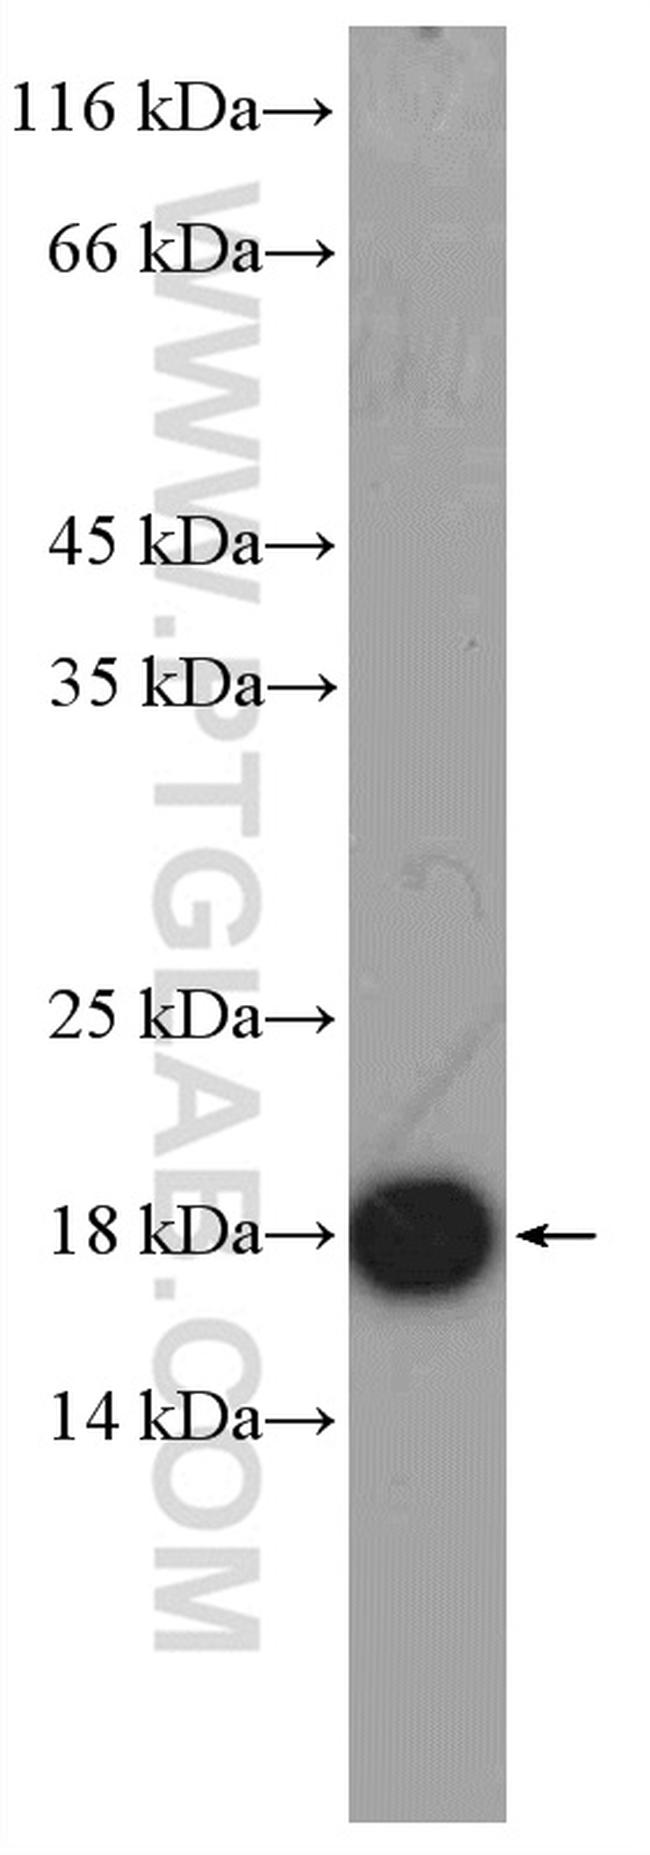 GMFG Antibody in Western Blot (WB)